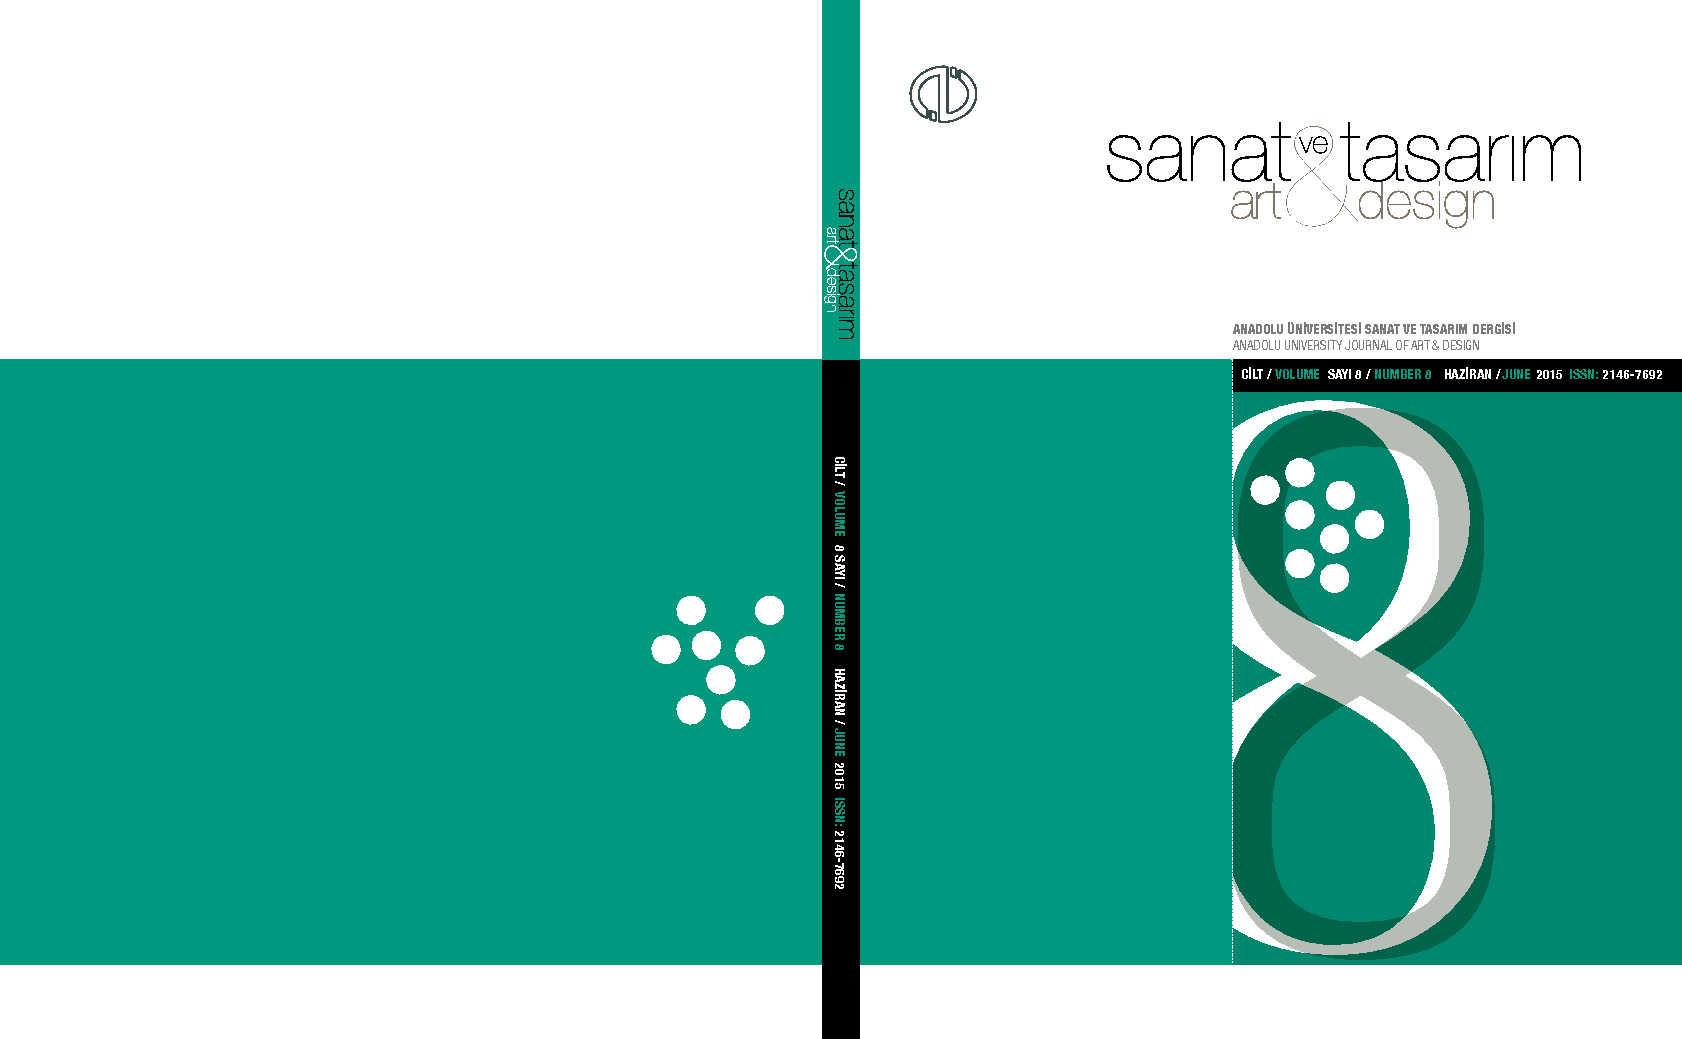 Sanat Ve Tasarım Dergisi 08. Say-Art-Design-Anadolu Üniversitesi-2015-169s